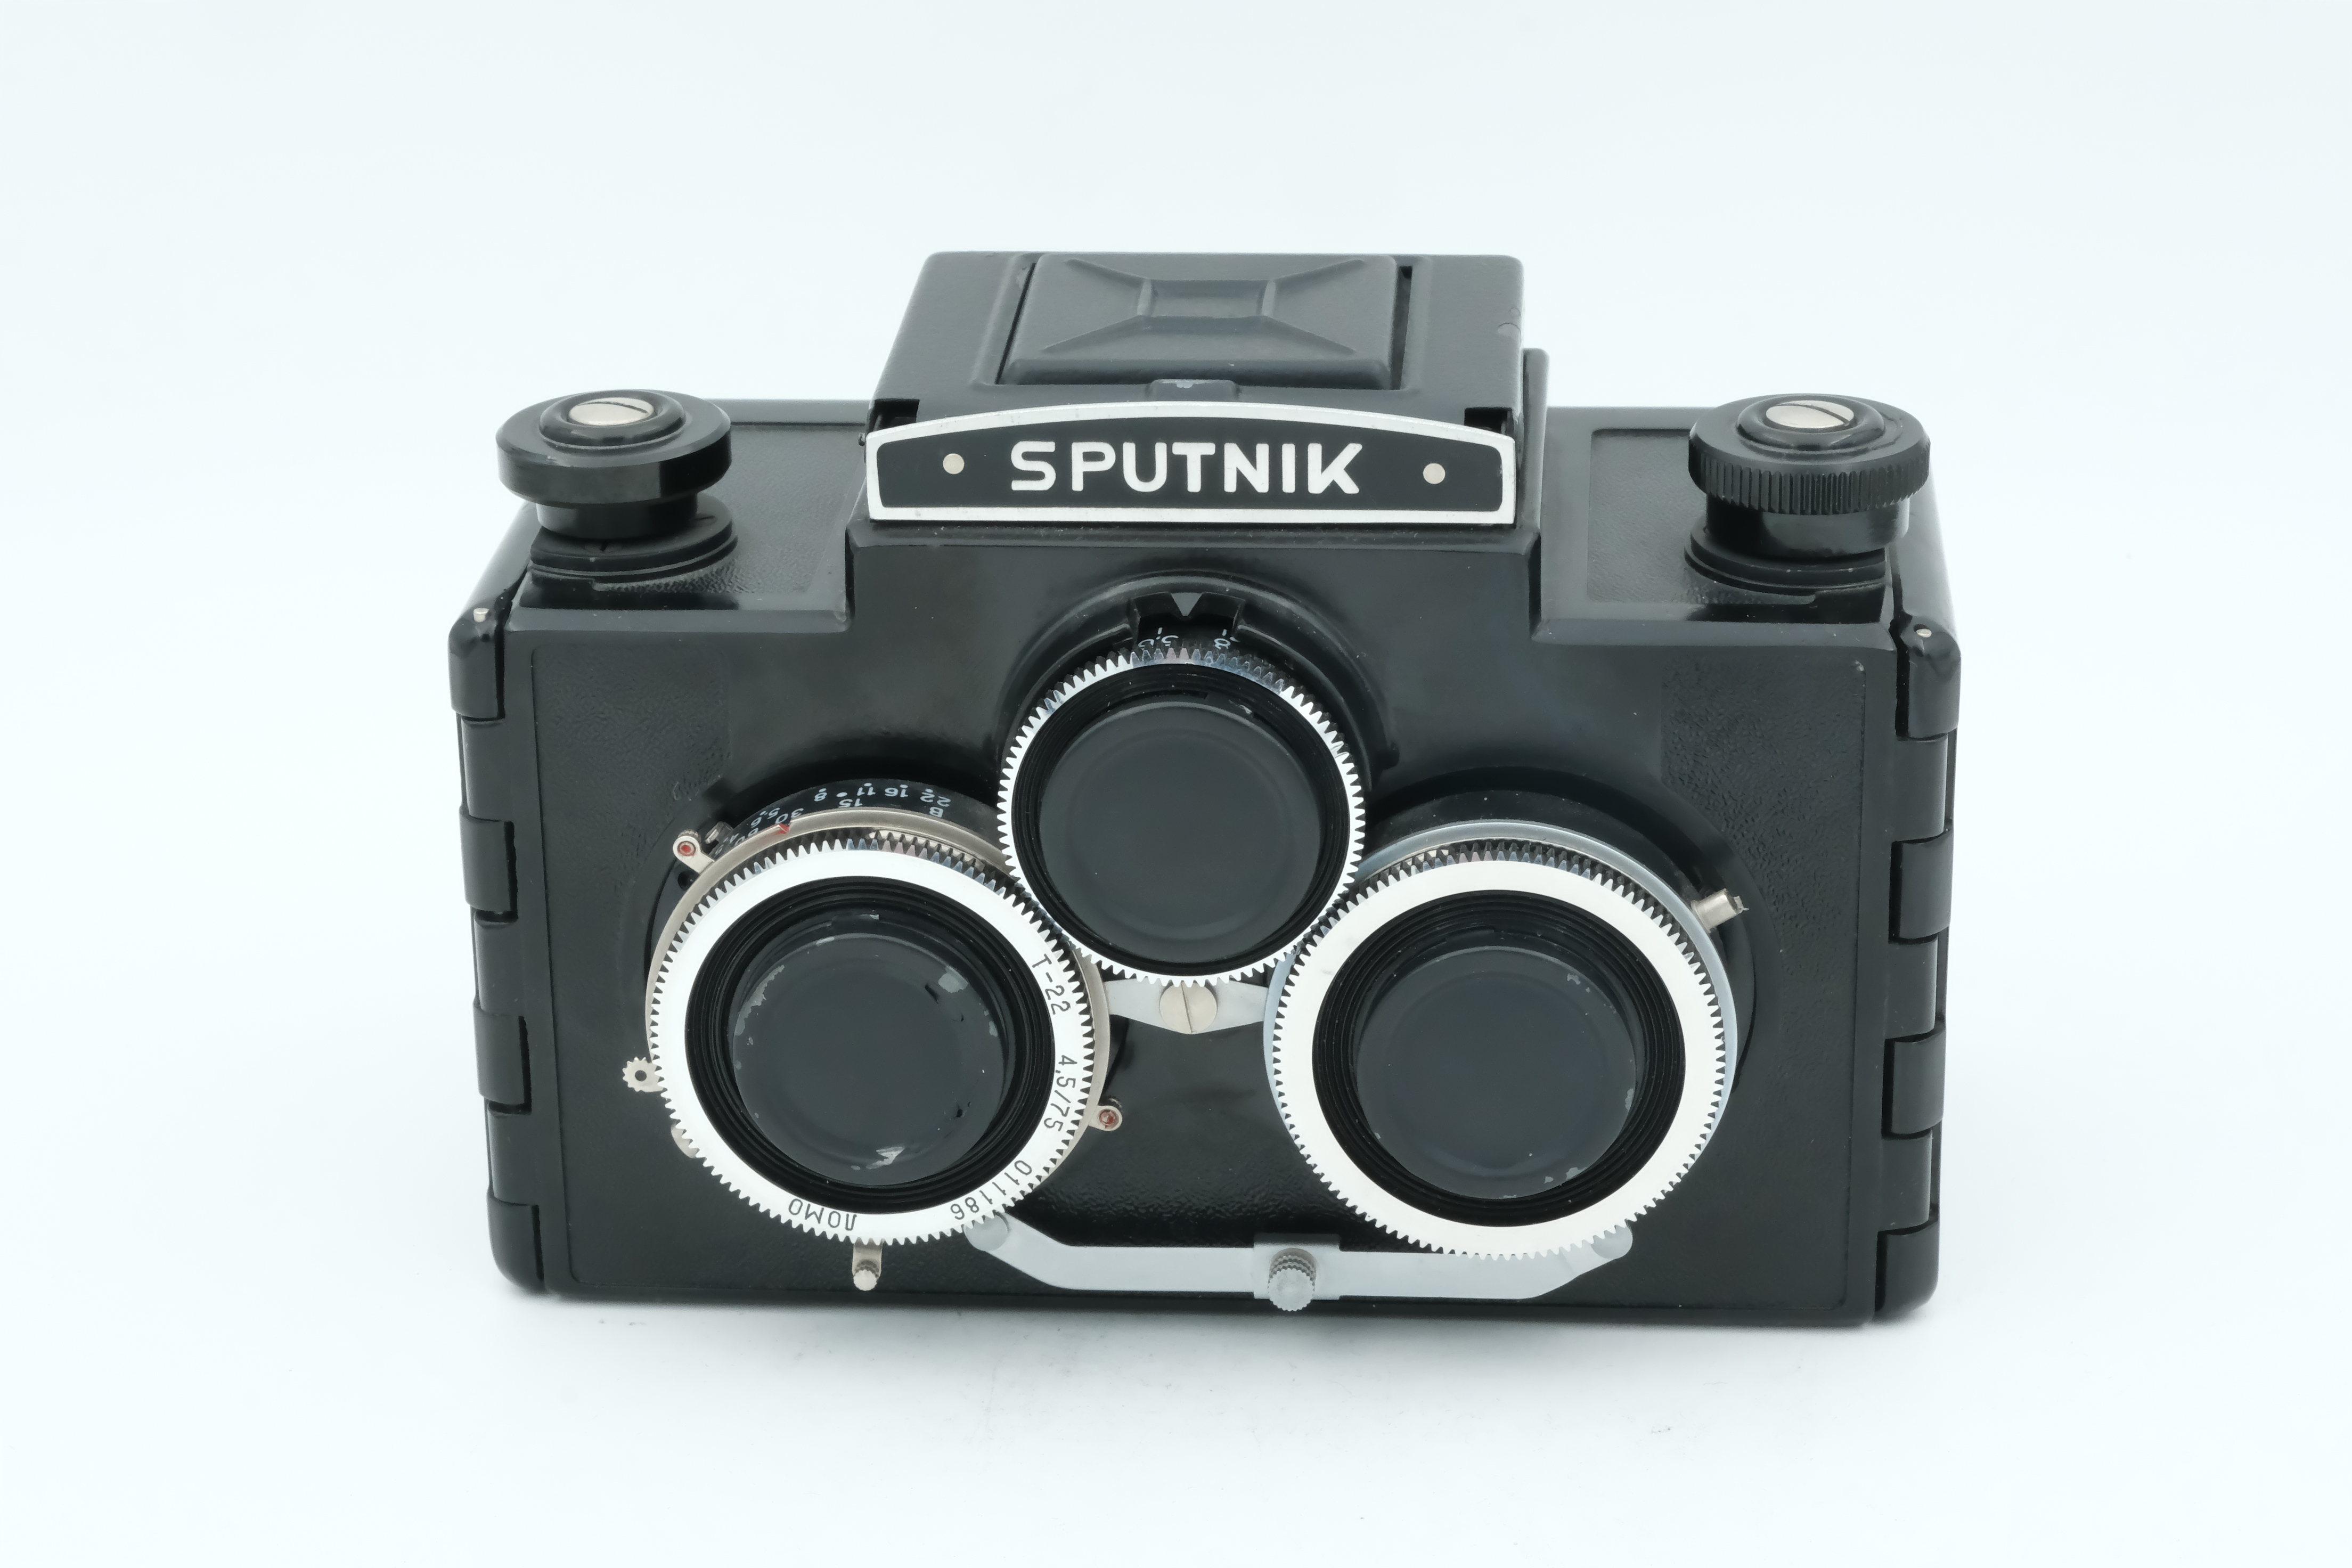 Sputnik 6x6 Stereo Kamera Bild 01